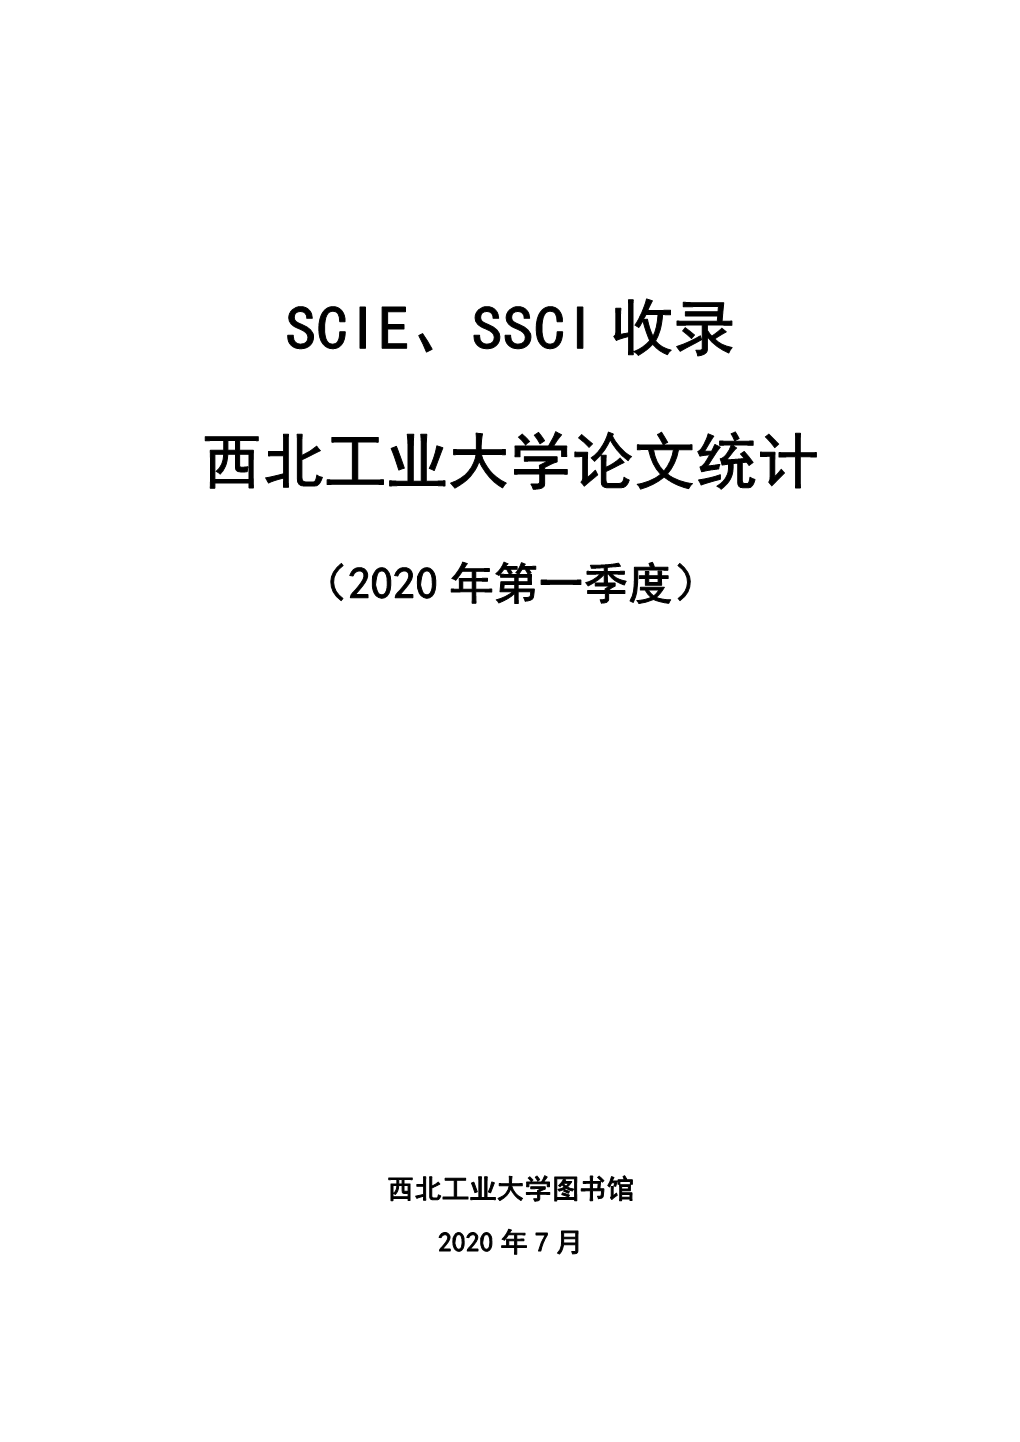 Scie-Ssci收录西北工业大学论文统计（2020年第一季度）